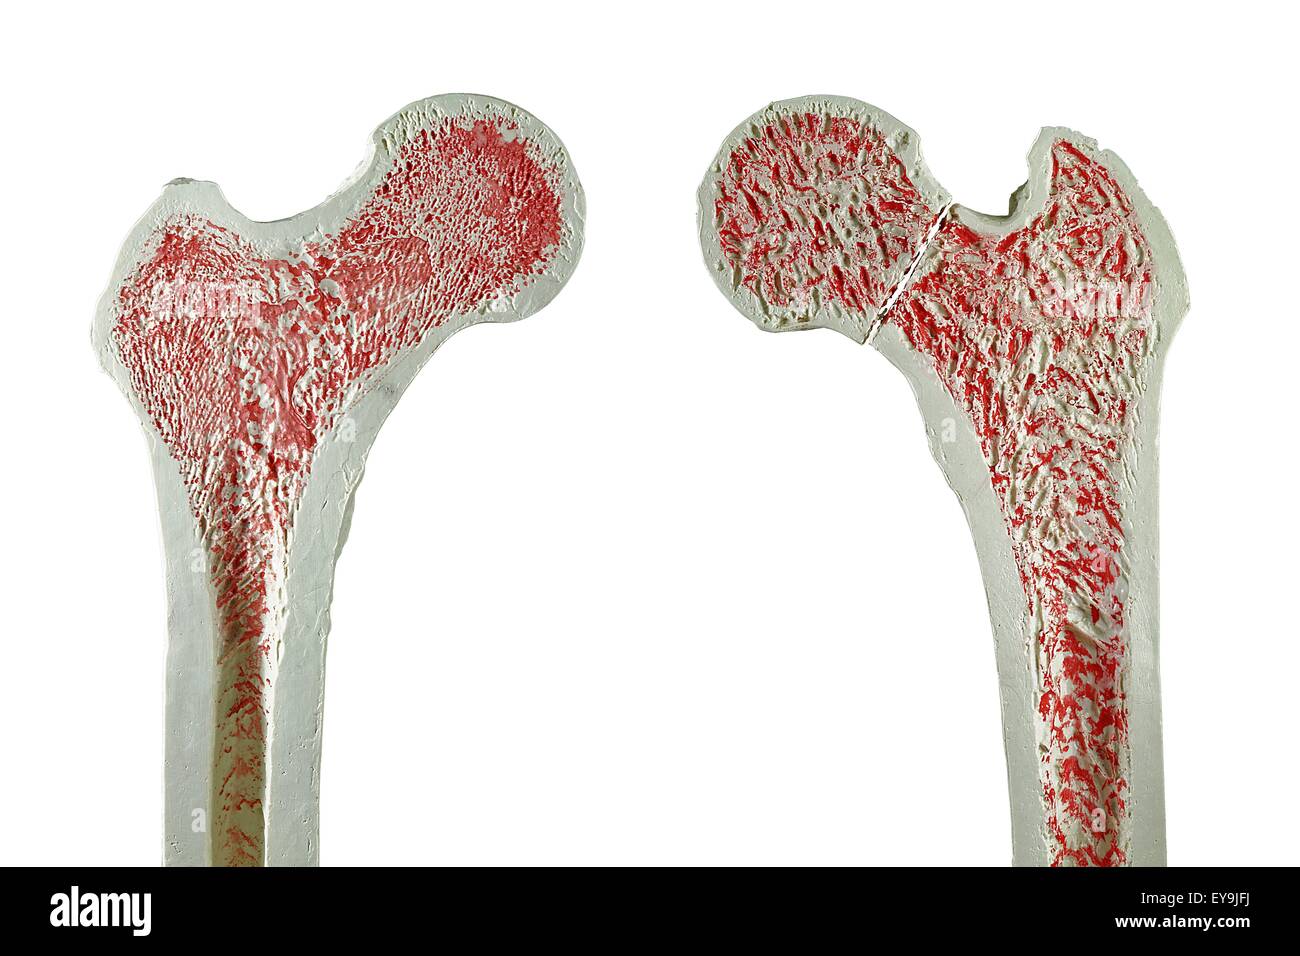 Sezioni trasversali attraverso modelli di un normale (sinistra) e femore fratturato (destra) del femore. Foto Stock